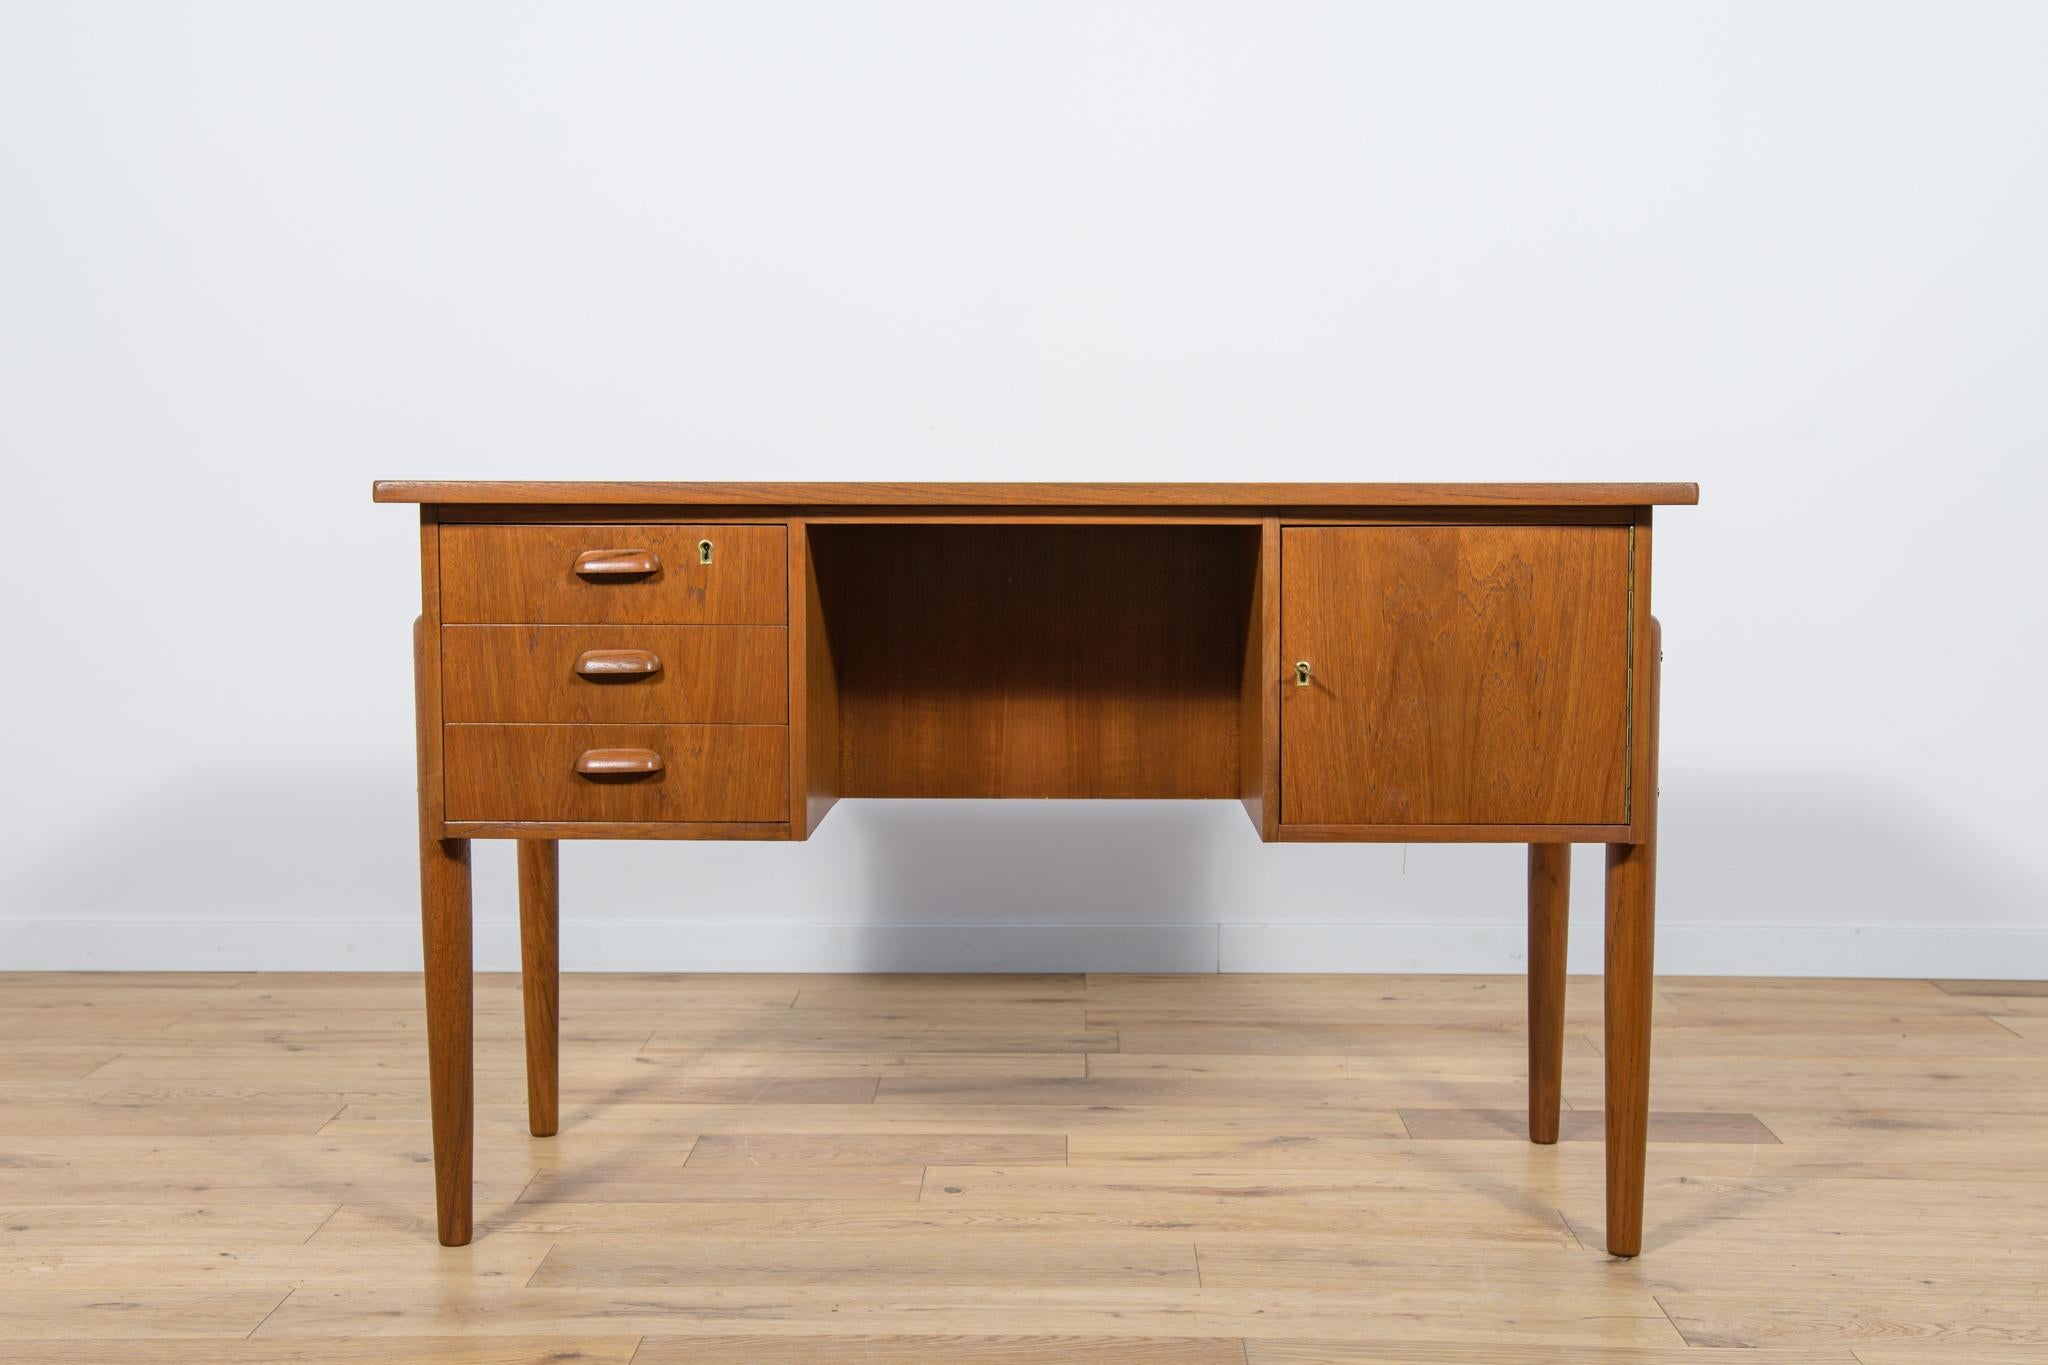 Dieser Schreibtisch wurde in den 1960er Jahren in Dänemark hergestellt. Er war aus Teakholz gefertigt und hatte konturierte Griffe. Es besteht aus zwei Modulen, links mit drei Schubladen, rechts mit einem abschließbaren Schrank. Im hinteren Teil